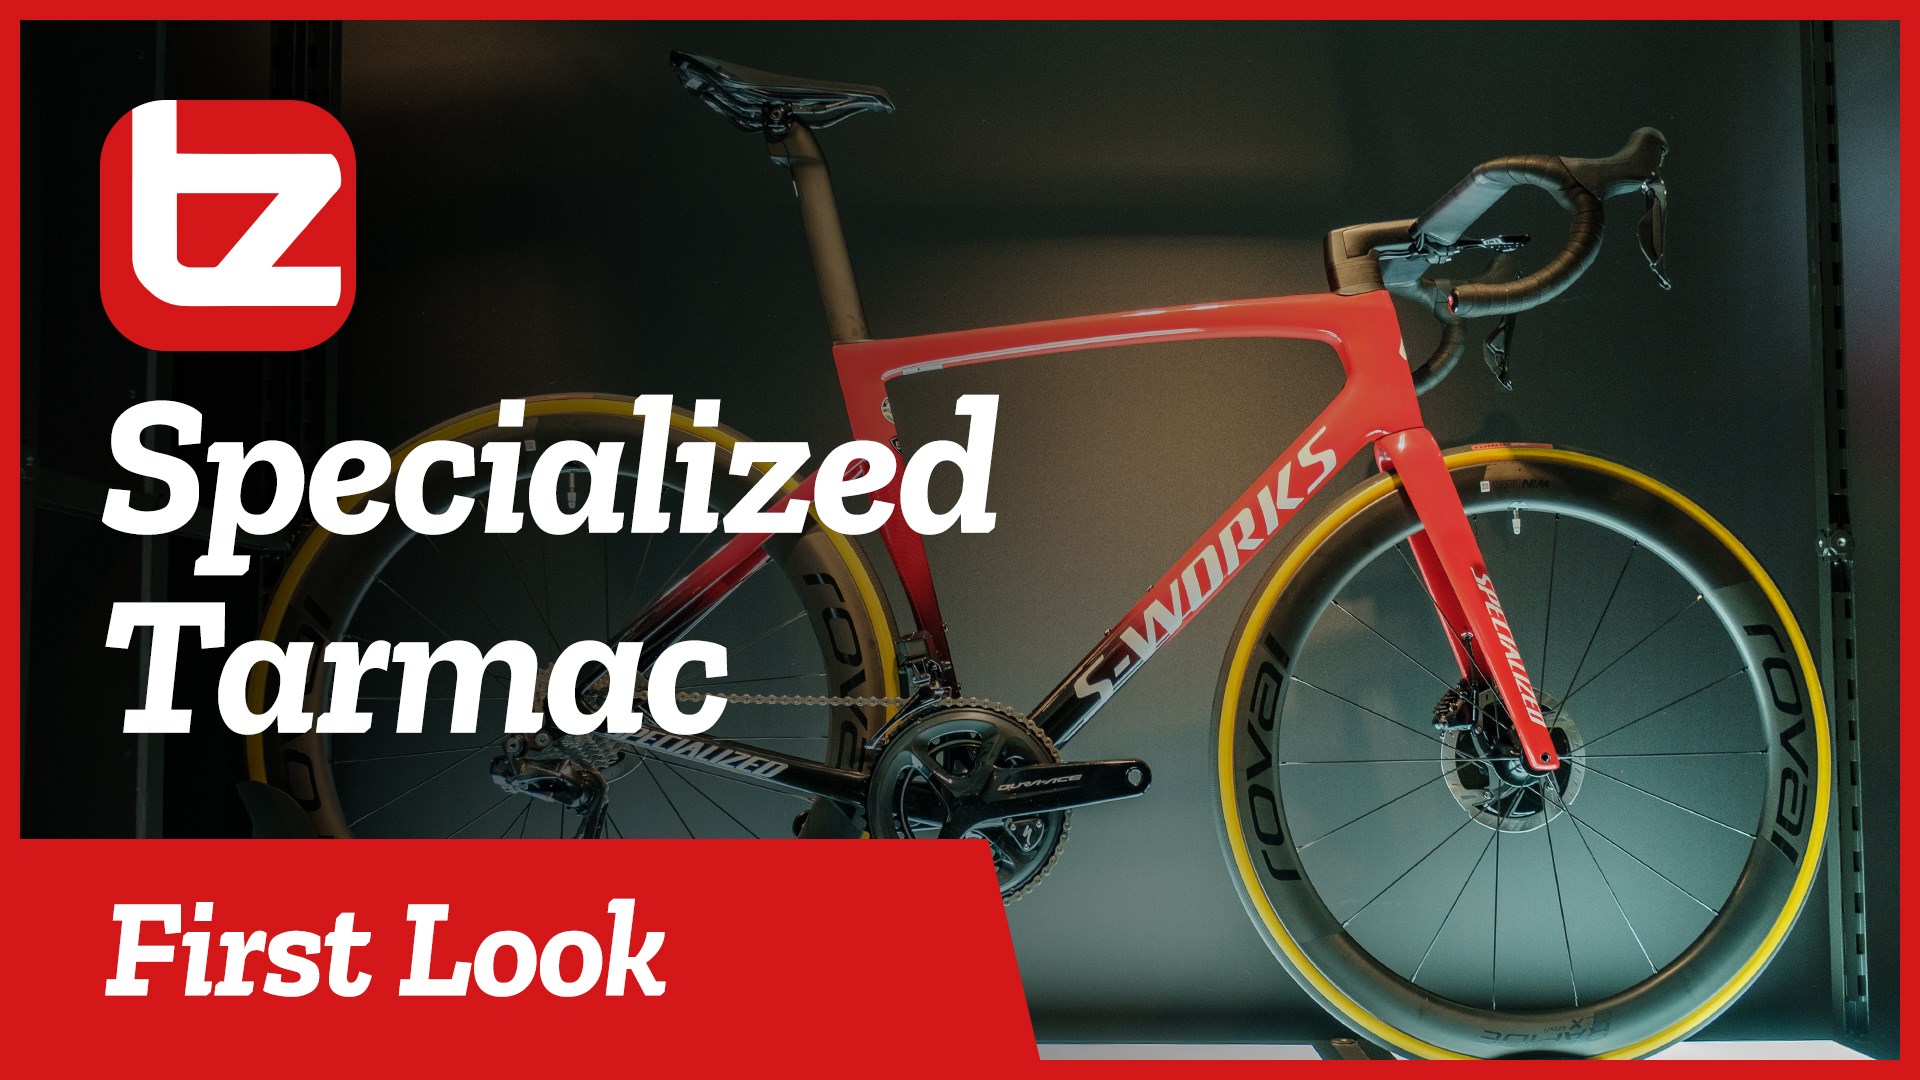 New Specialized Tarmac | First Look | Tredz Bikes